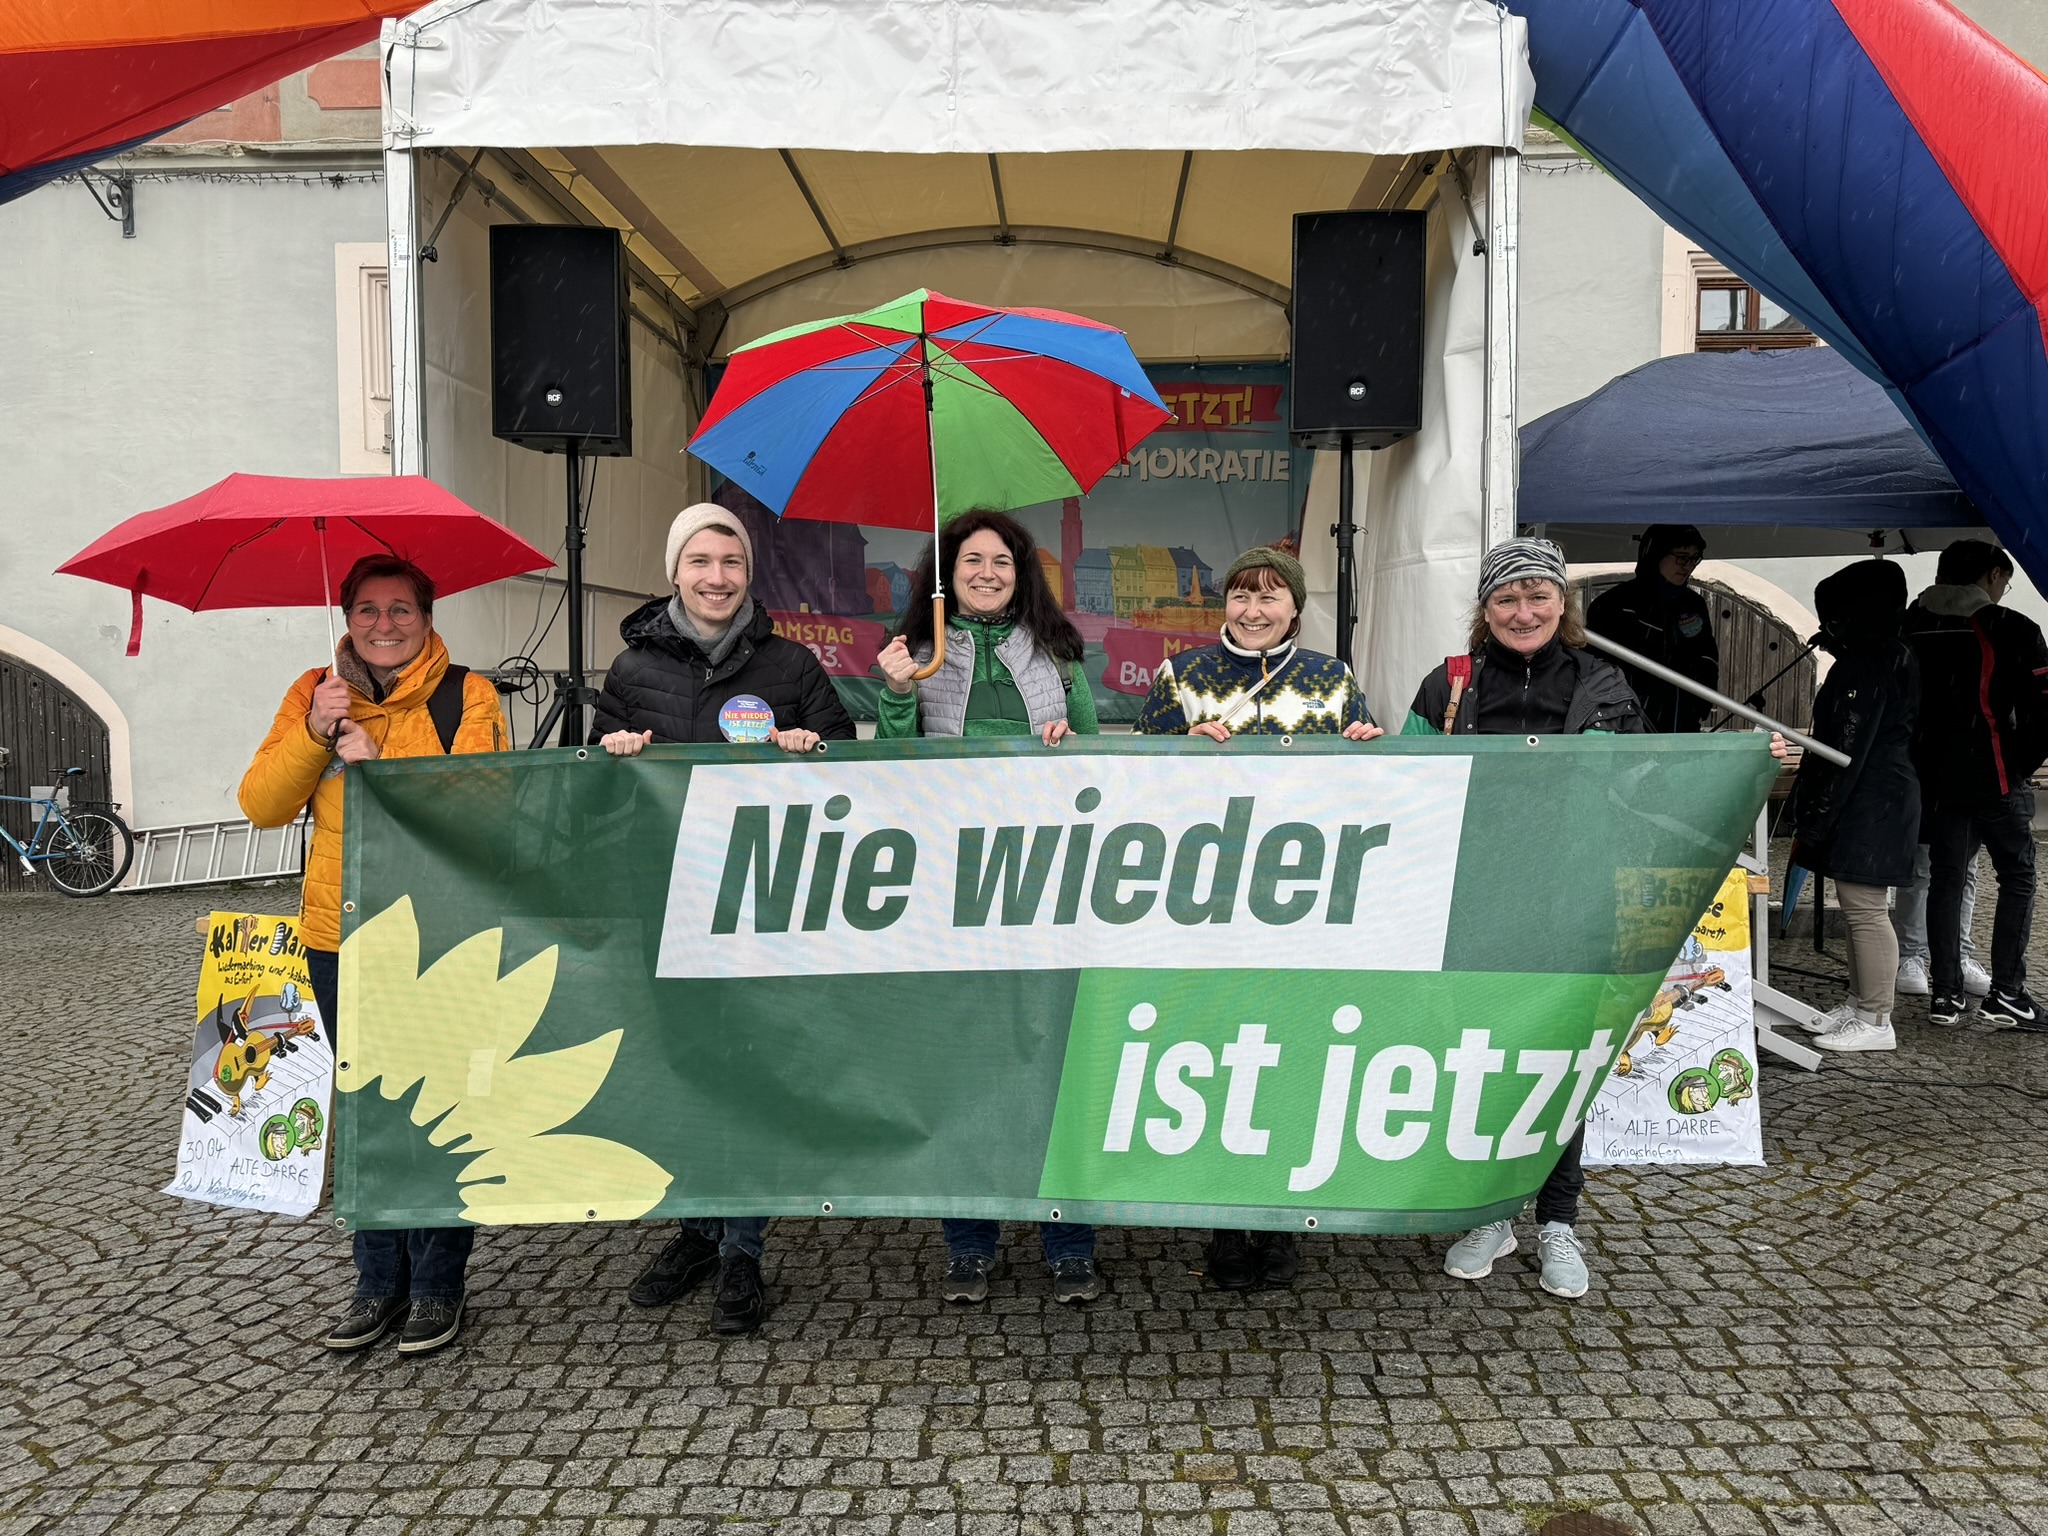 Gruppenbild von Mitgliedern der GRÜNEN in Rhön-Grabfeld, sie halten ein Spruchband in grüner Parteioptik mit der Aufschrift "Nie wieder ist jetzt", im Hintergrund eine Bühne und eine aufblasbarer Regenbogen